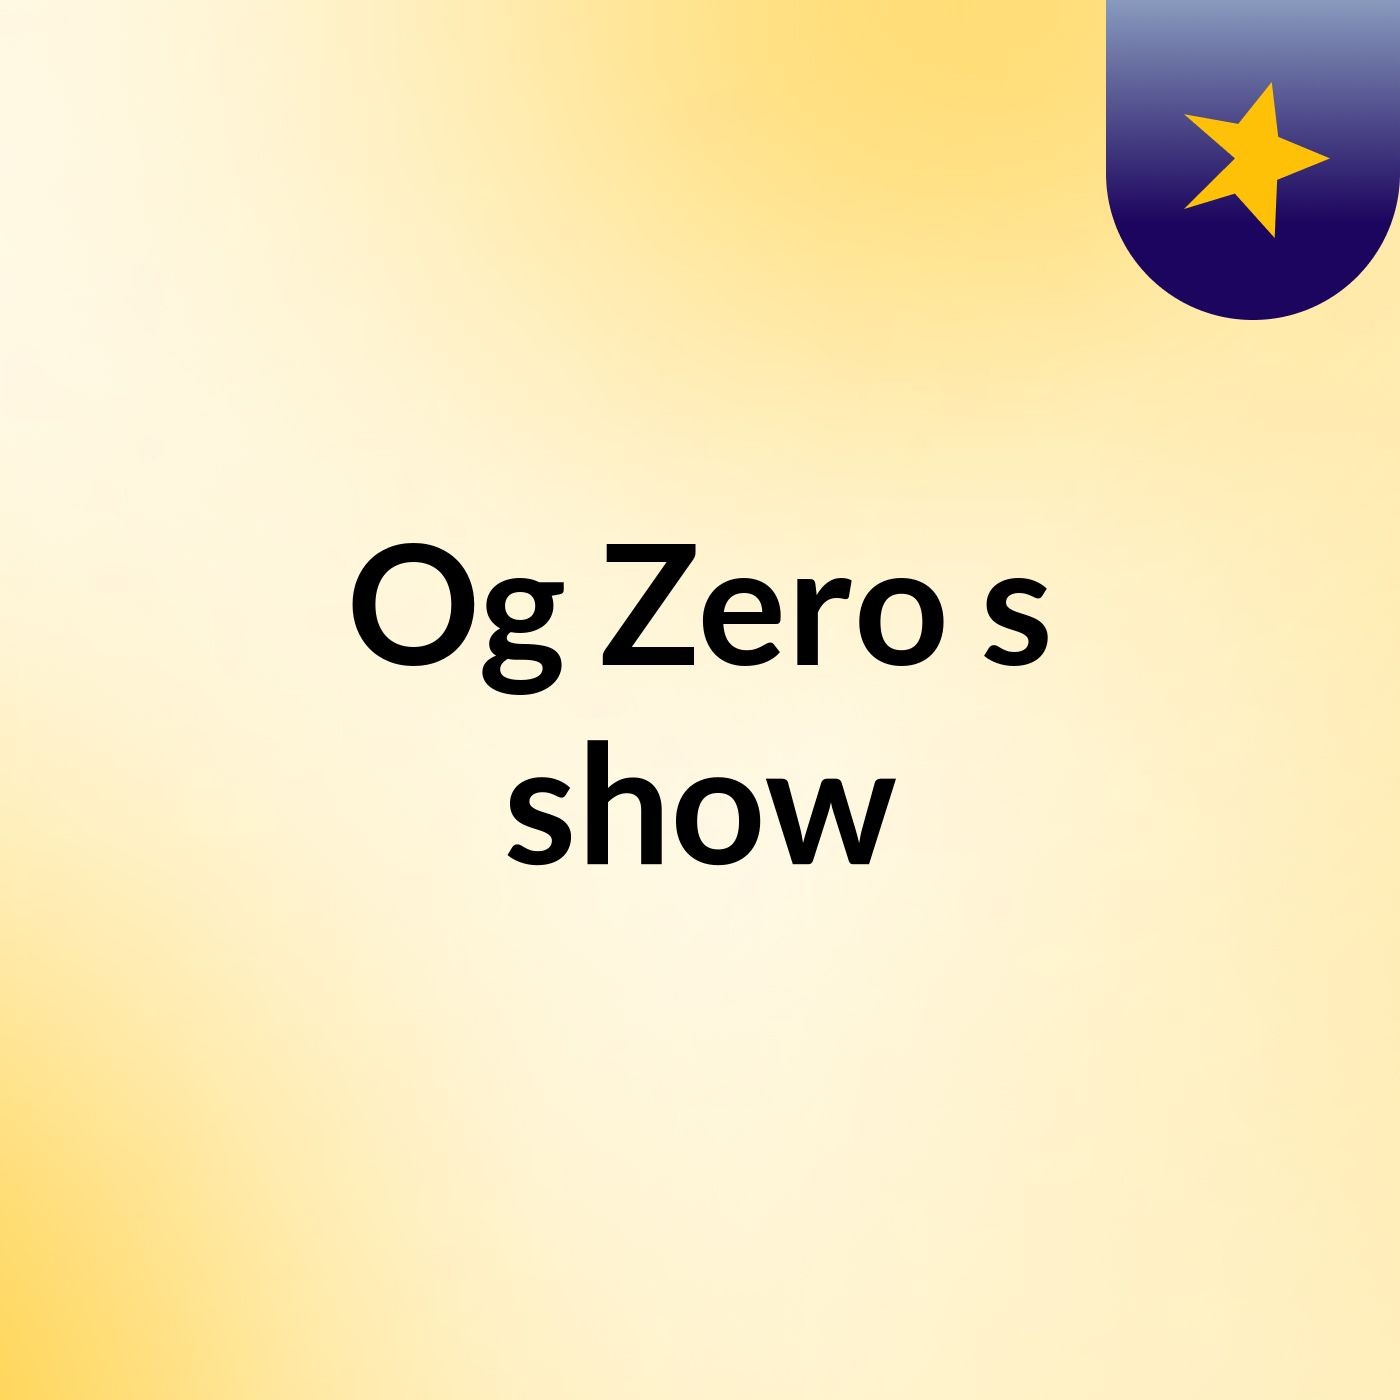 Og Zero's show